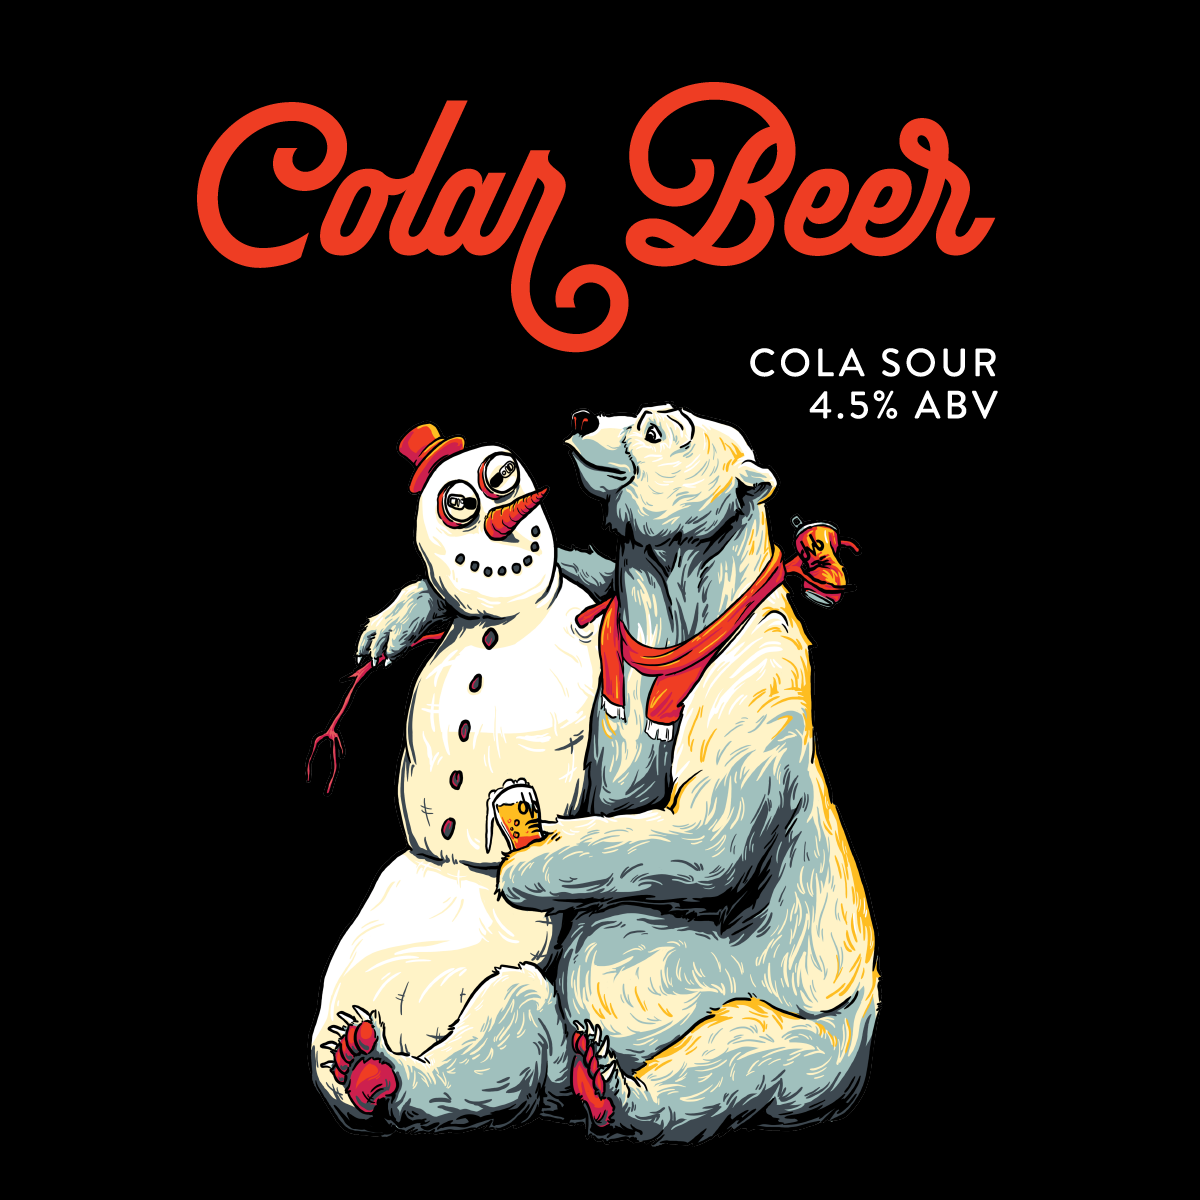 Colar Beer